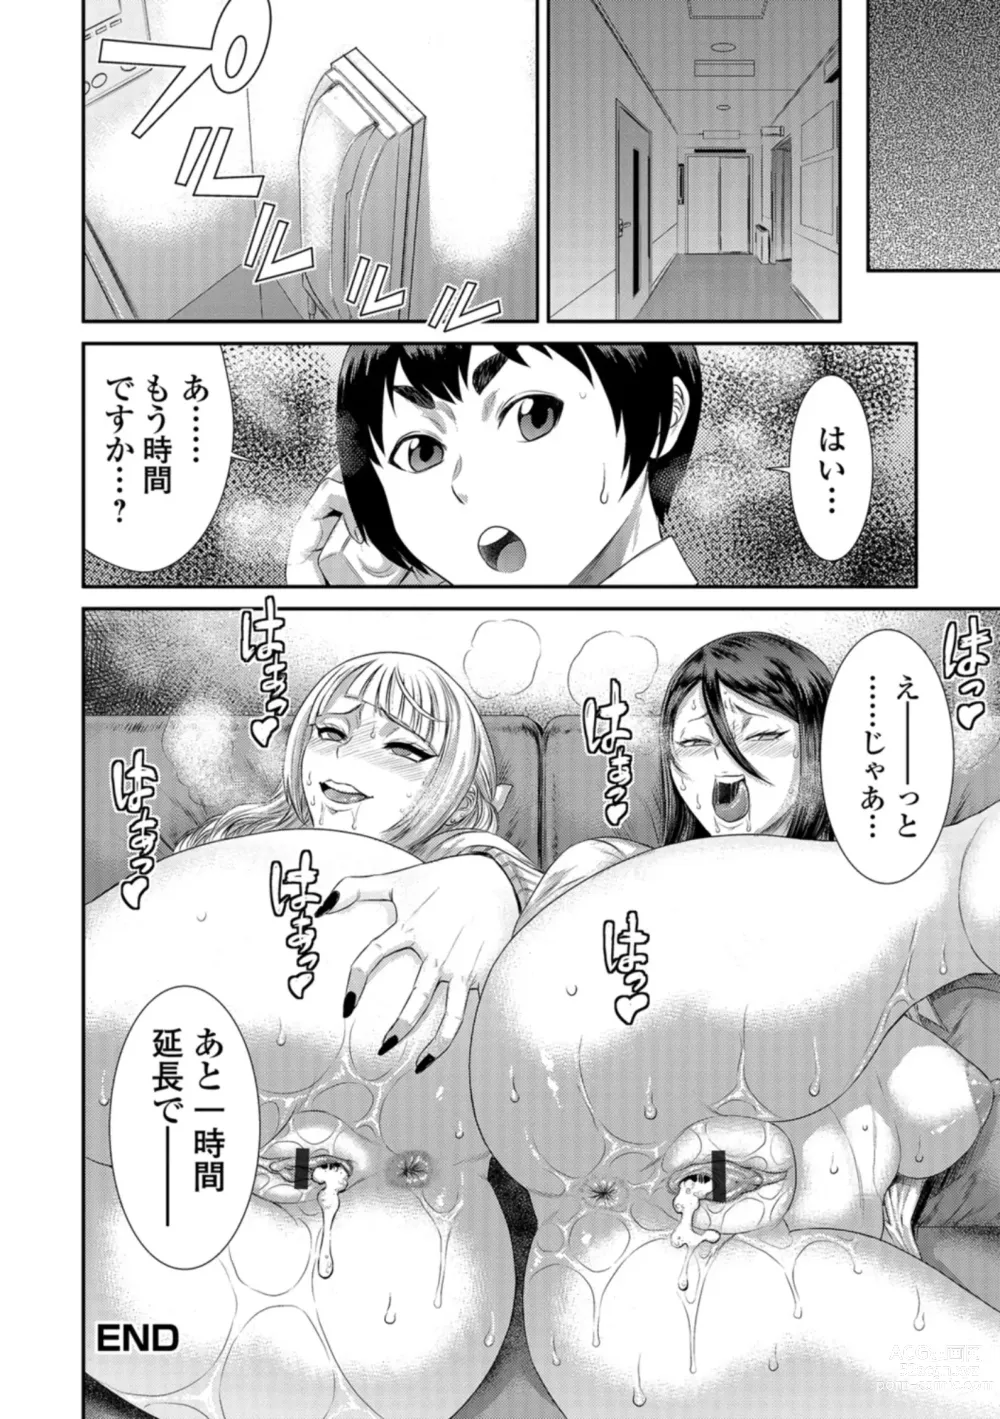 Page 179 of manga Houkago Galhame Nikubenki